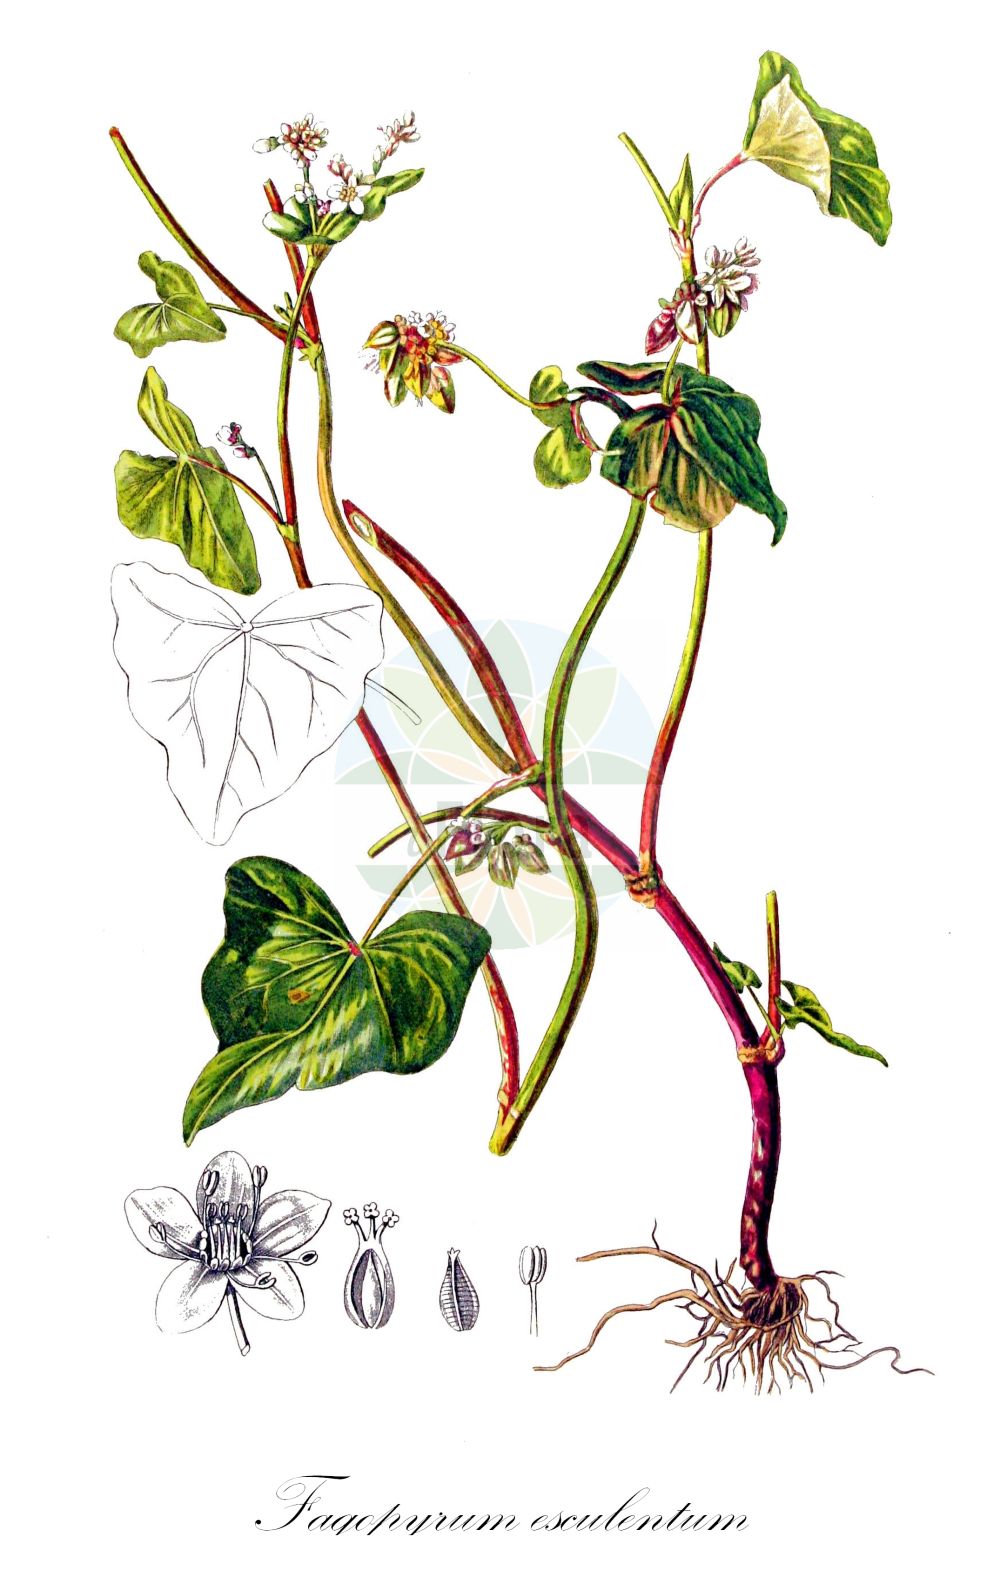 Historische Abbildung von Fagopyrum esculentum (Echter Buchweizen - Buckwheat). Das Bild zeigt Blatt, Bluete, Frucht und Same. ---- Historical Drawing of Fagopyrum esculentum (Echter Buchweizen - Buckwheat). The image is showing leaf, flower, fruit and seed.(Fagopyrum esculentum,Echter Buchweizen,Buckwheat,Fagopyrum esculentum,Fagopyrum sagittatum,Fagopyrum vulgare,Polygonum fagopyrum,Echter Buchweizen,Heidekorn,Buckwheat,Common Buckwheat,Fagopyrum,Buchweizen,Buckwheat,Polygonaceae,Knöterichgewächse,Knotgrass family,Blatt,Bluete,Frucht,Same,leaf,flower,fruit,seed,Kops (1800-1934))